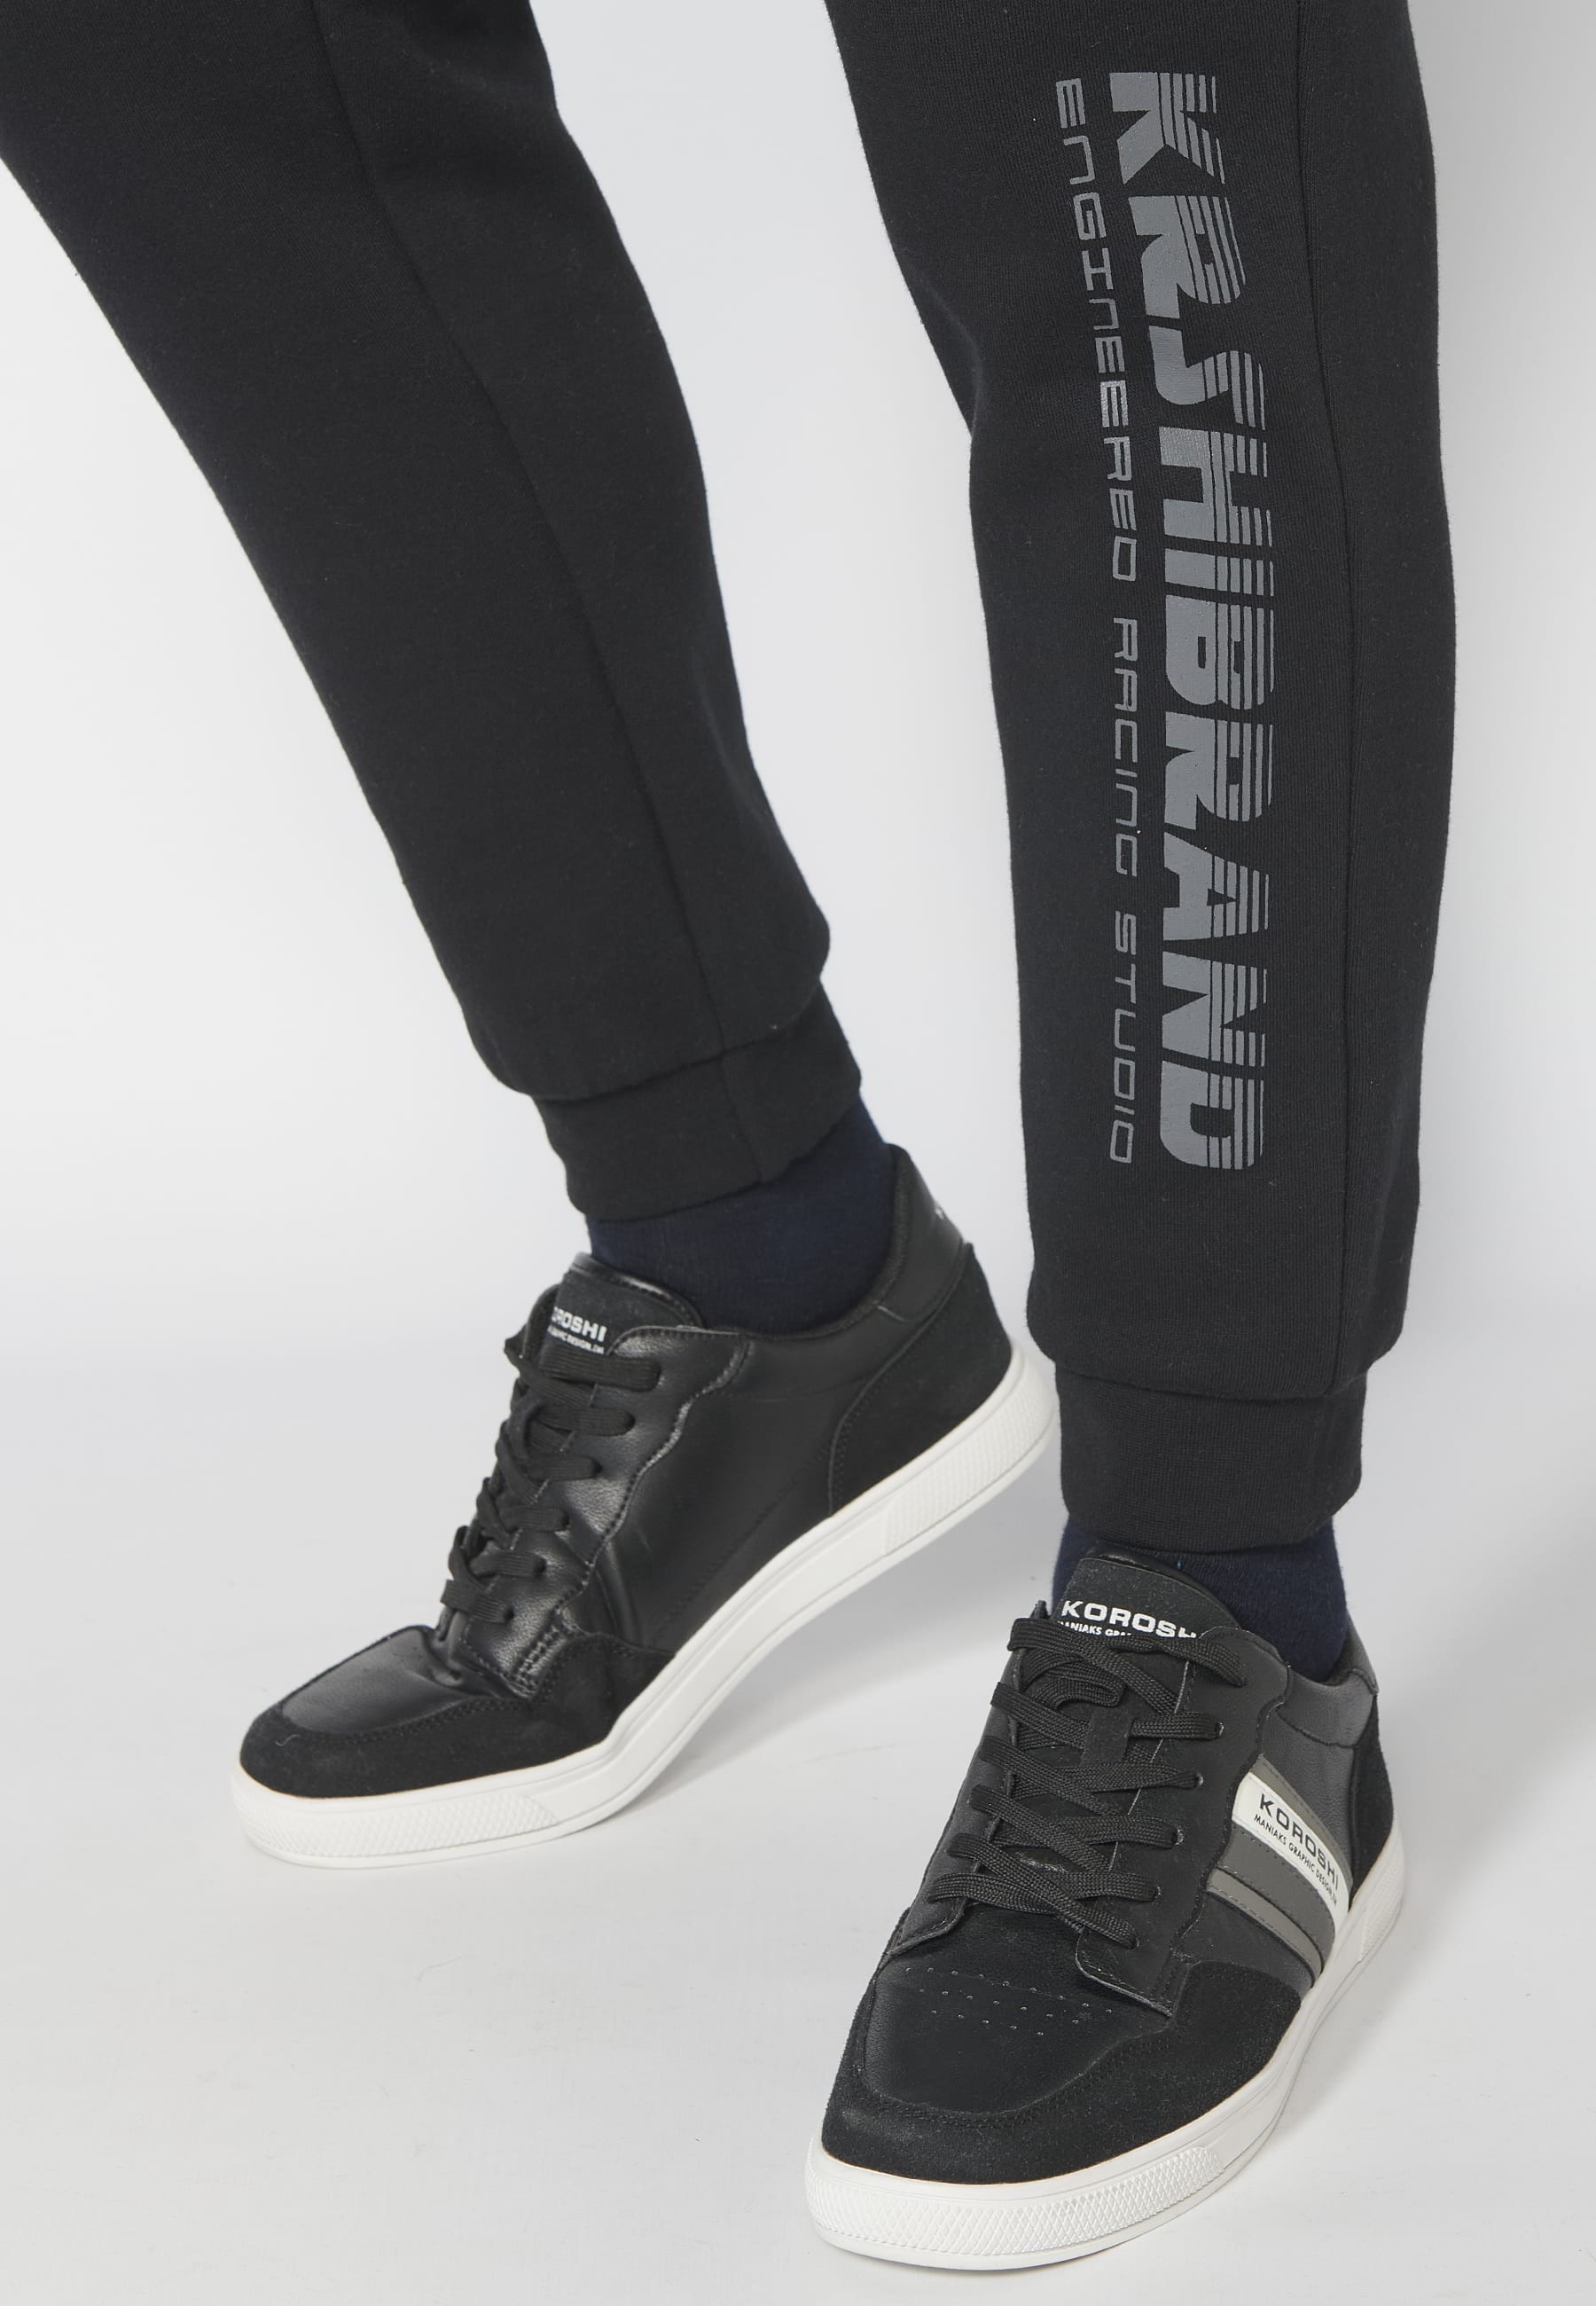 Pantalón Deportivo largo jogger con cintura elástica ajustable y bolsillos laterales color Negro para Hombre